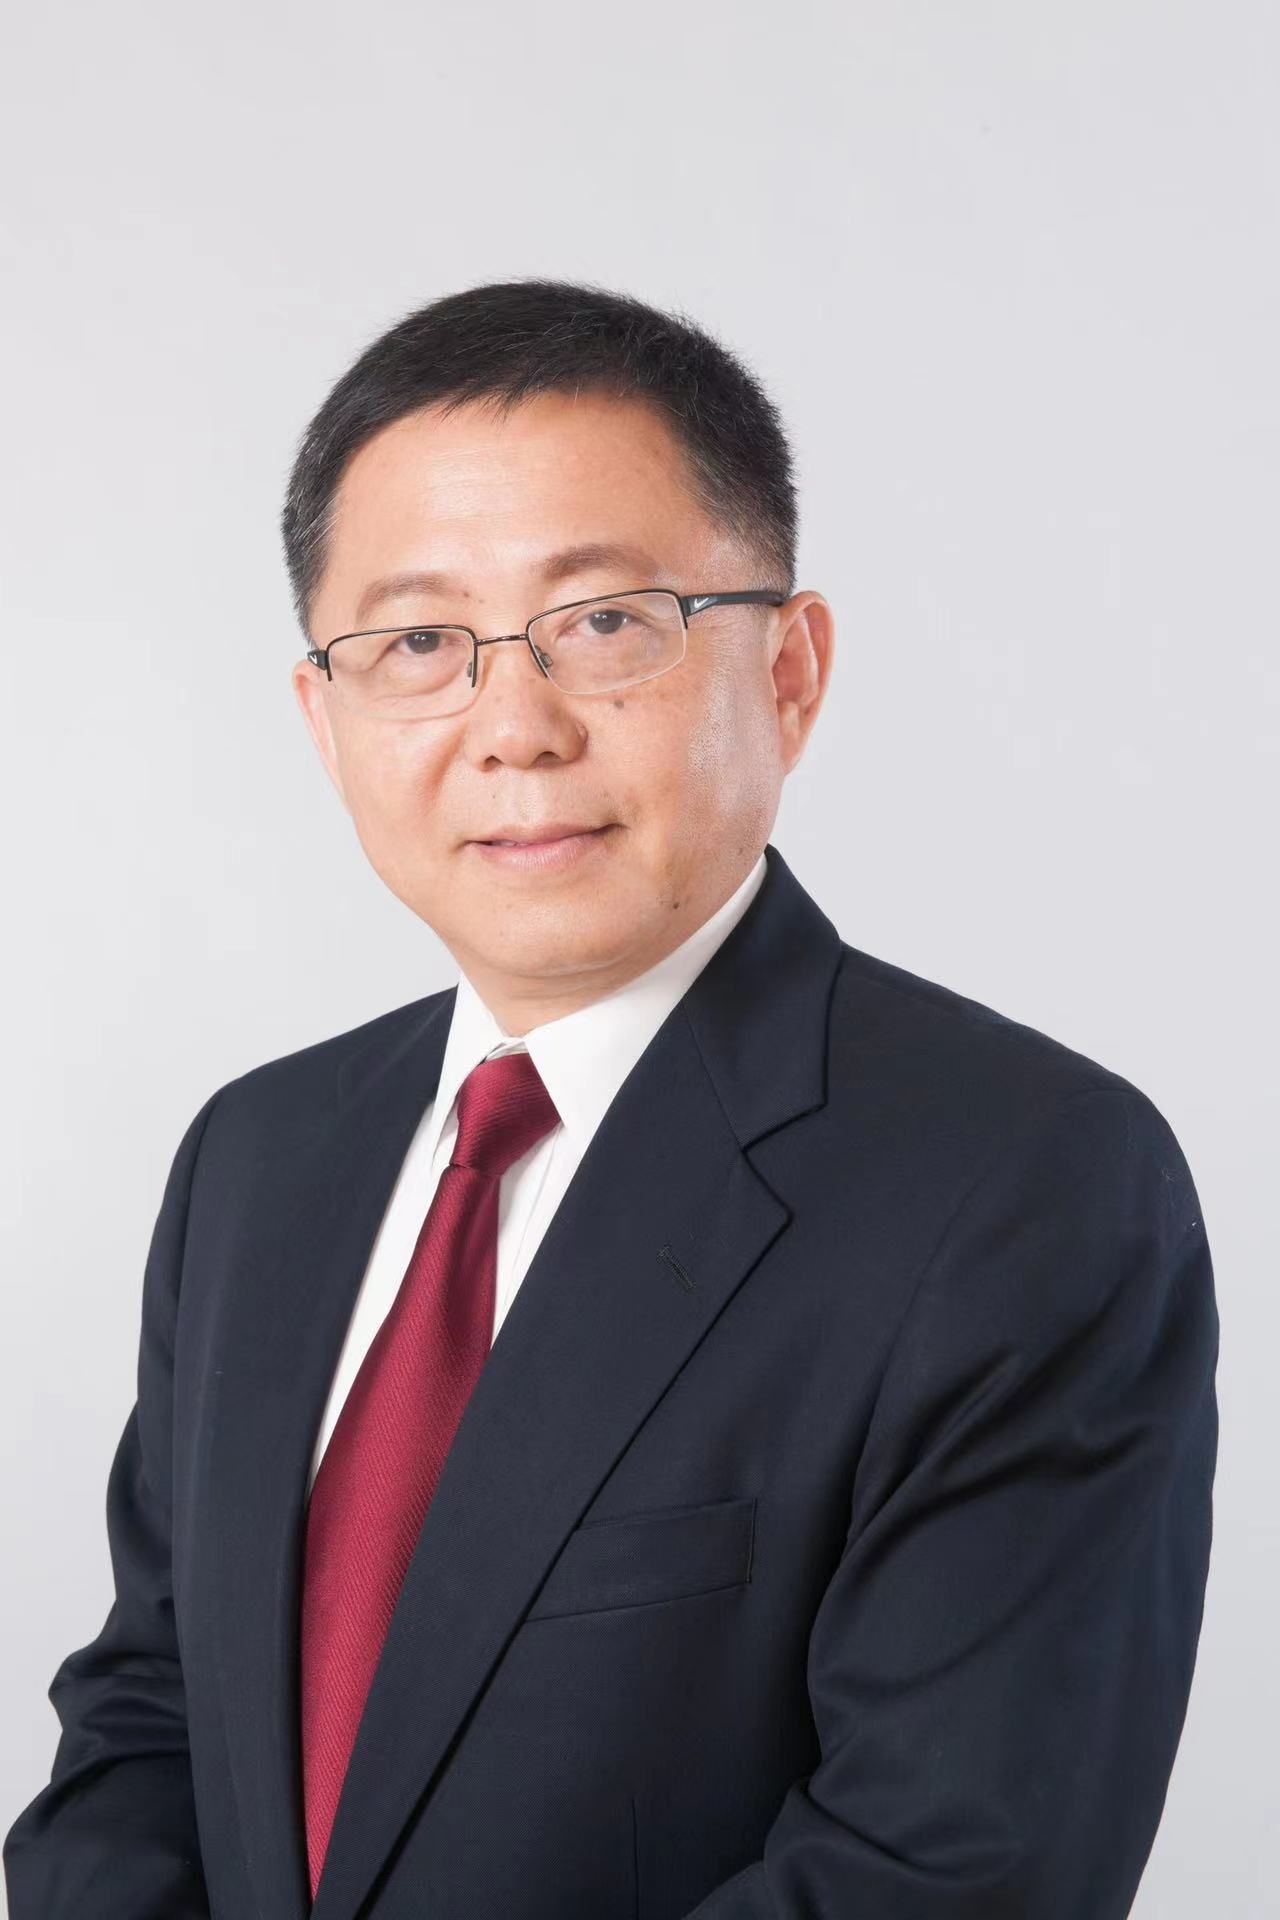 Dr. Chang Wei